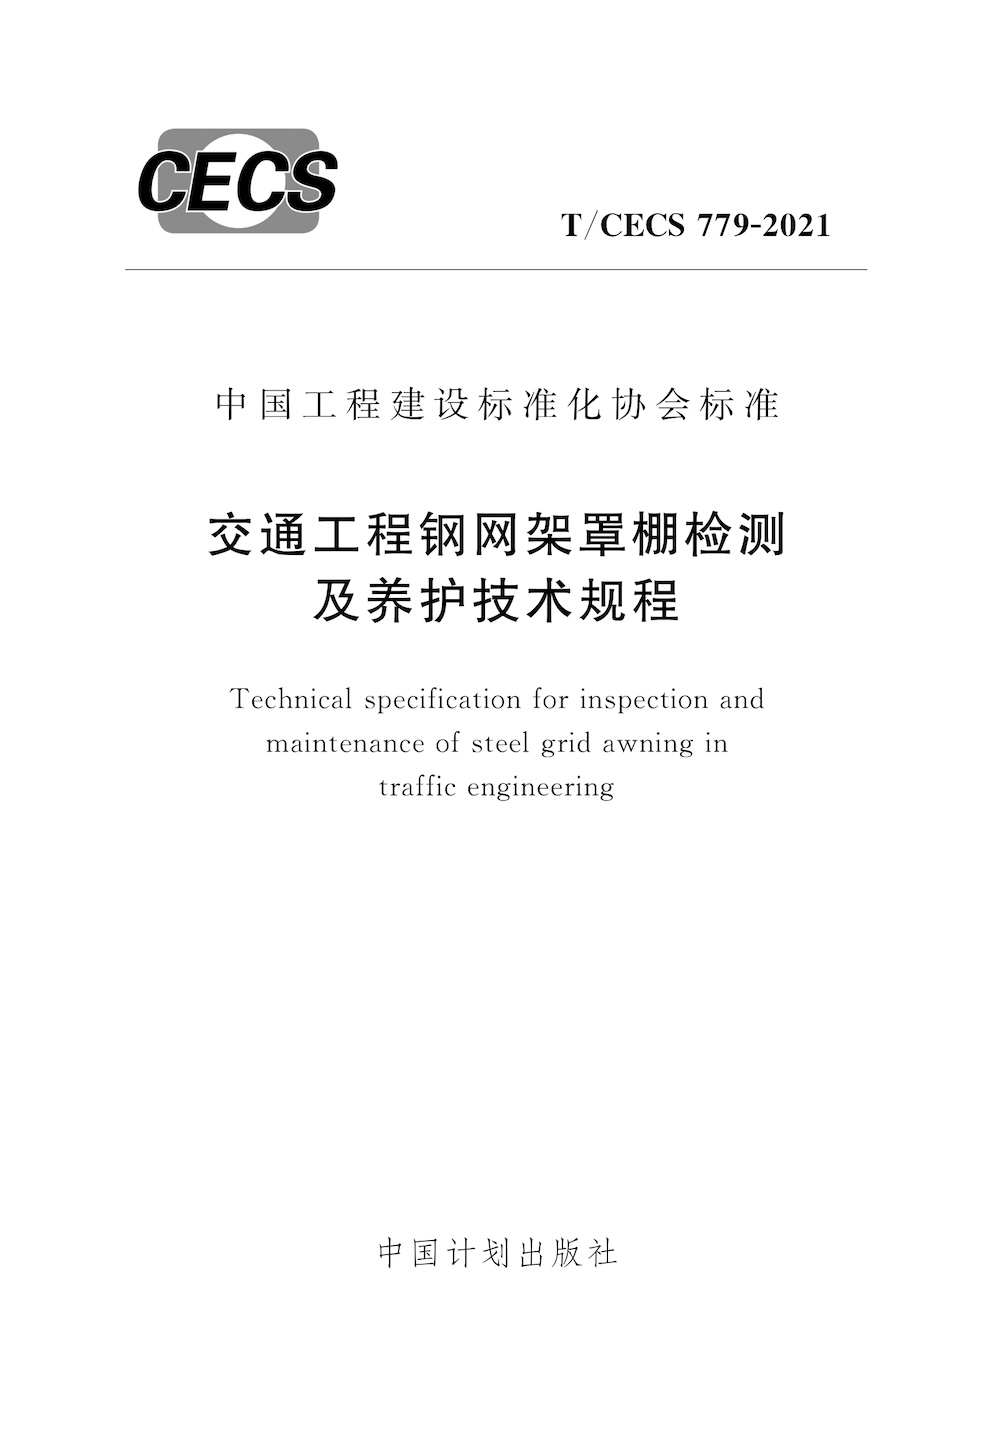 T/CECS 779-2020 交通工程钢网架罩棚检测及养护技术规程